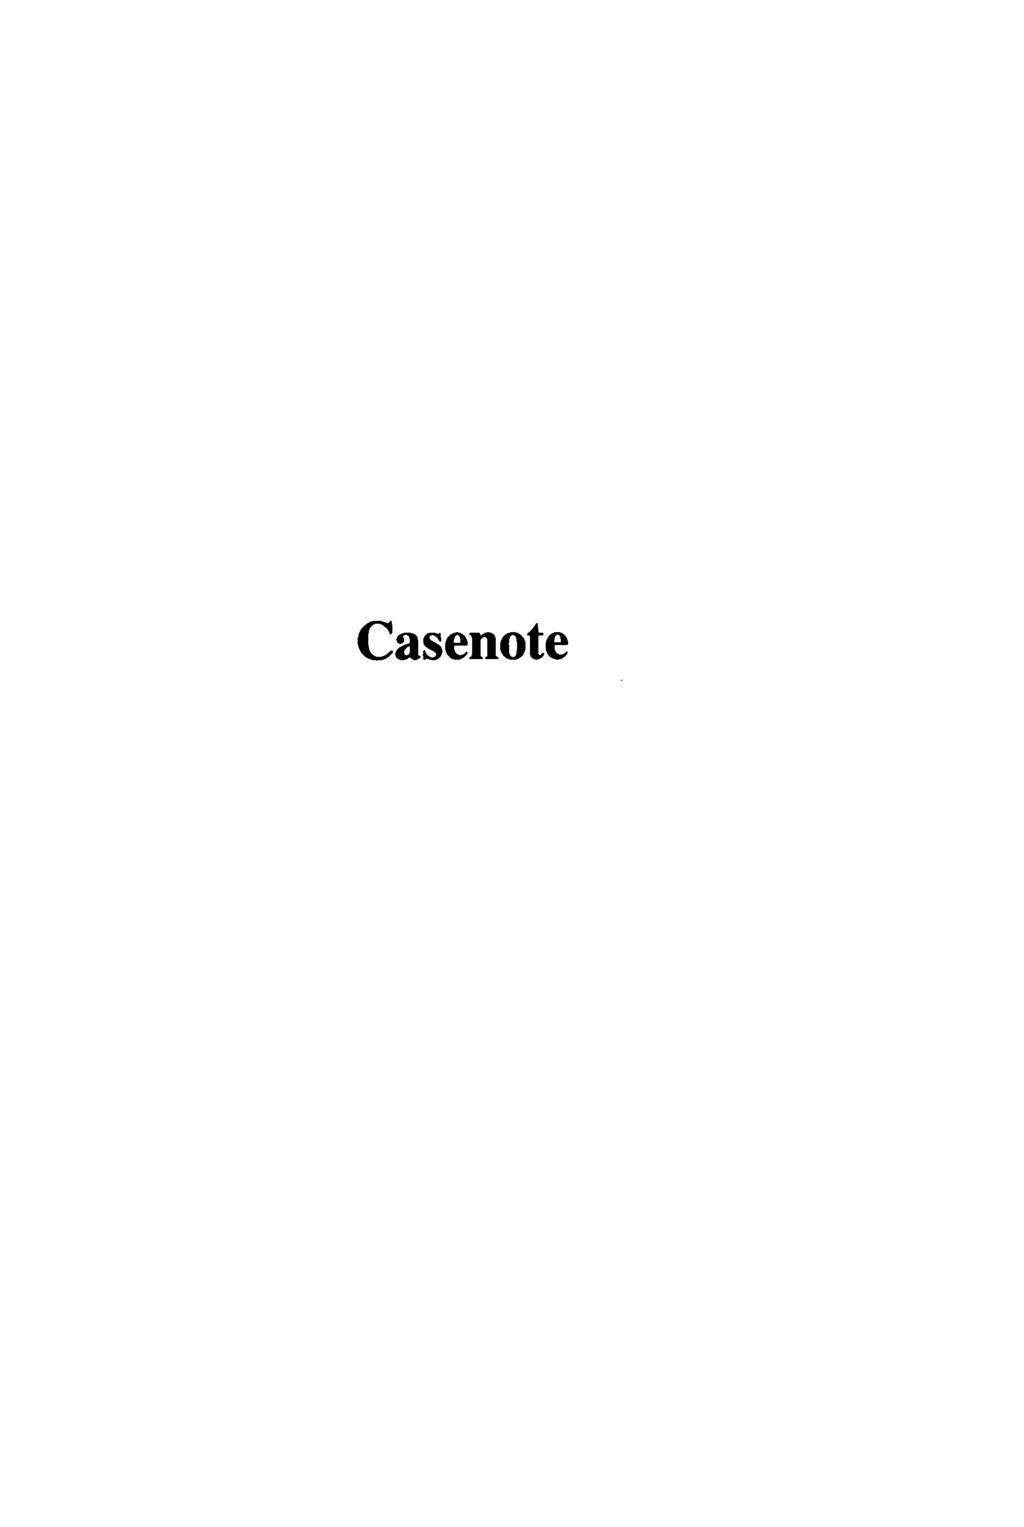 Casenote